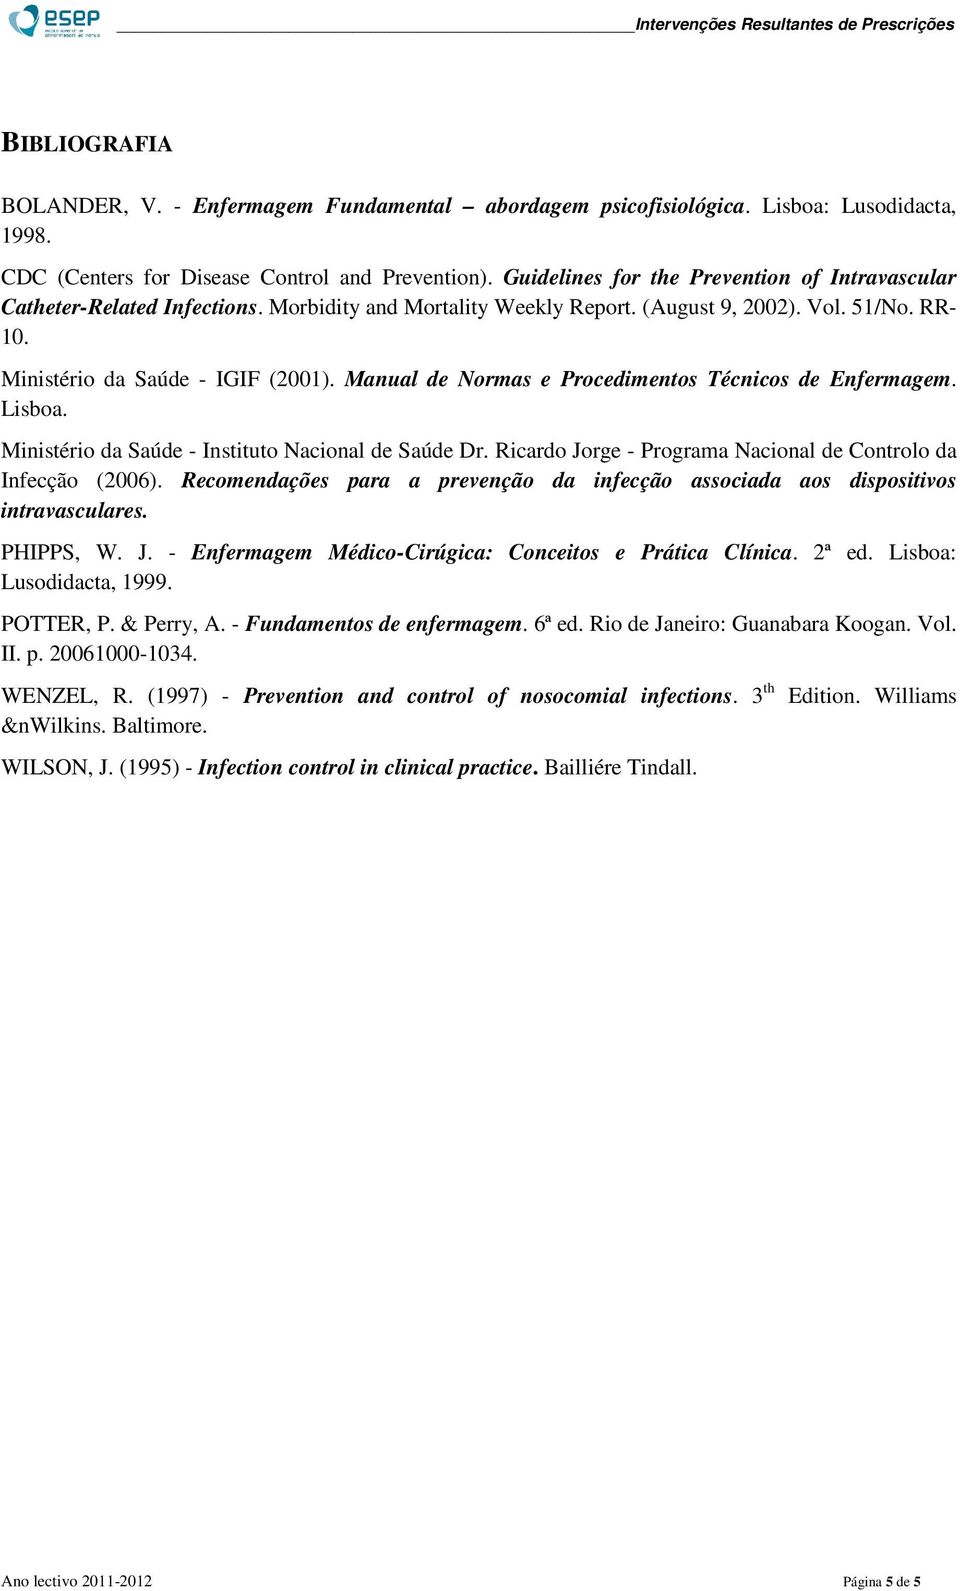 Manual de Normas e Procedimentos Técnicos de Enfermagem. Lisboa. Ministério da Saúde - Instituto Nacional de Saúde Dr. Ricardo Jorge - Programa Nacional de Controlo da Infecção (2006).